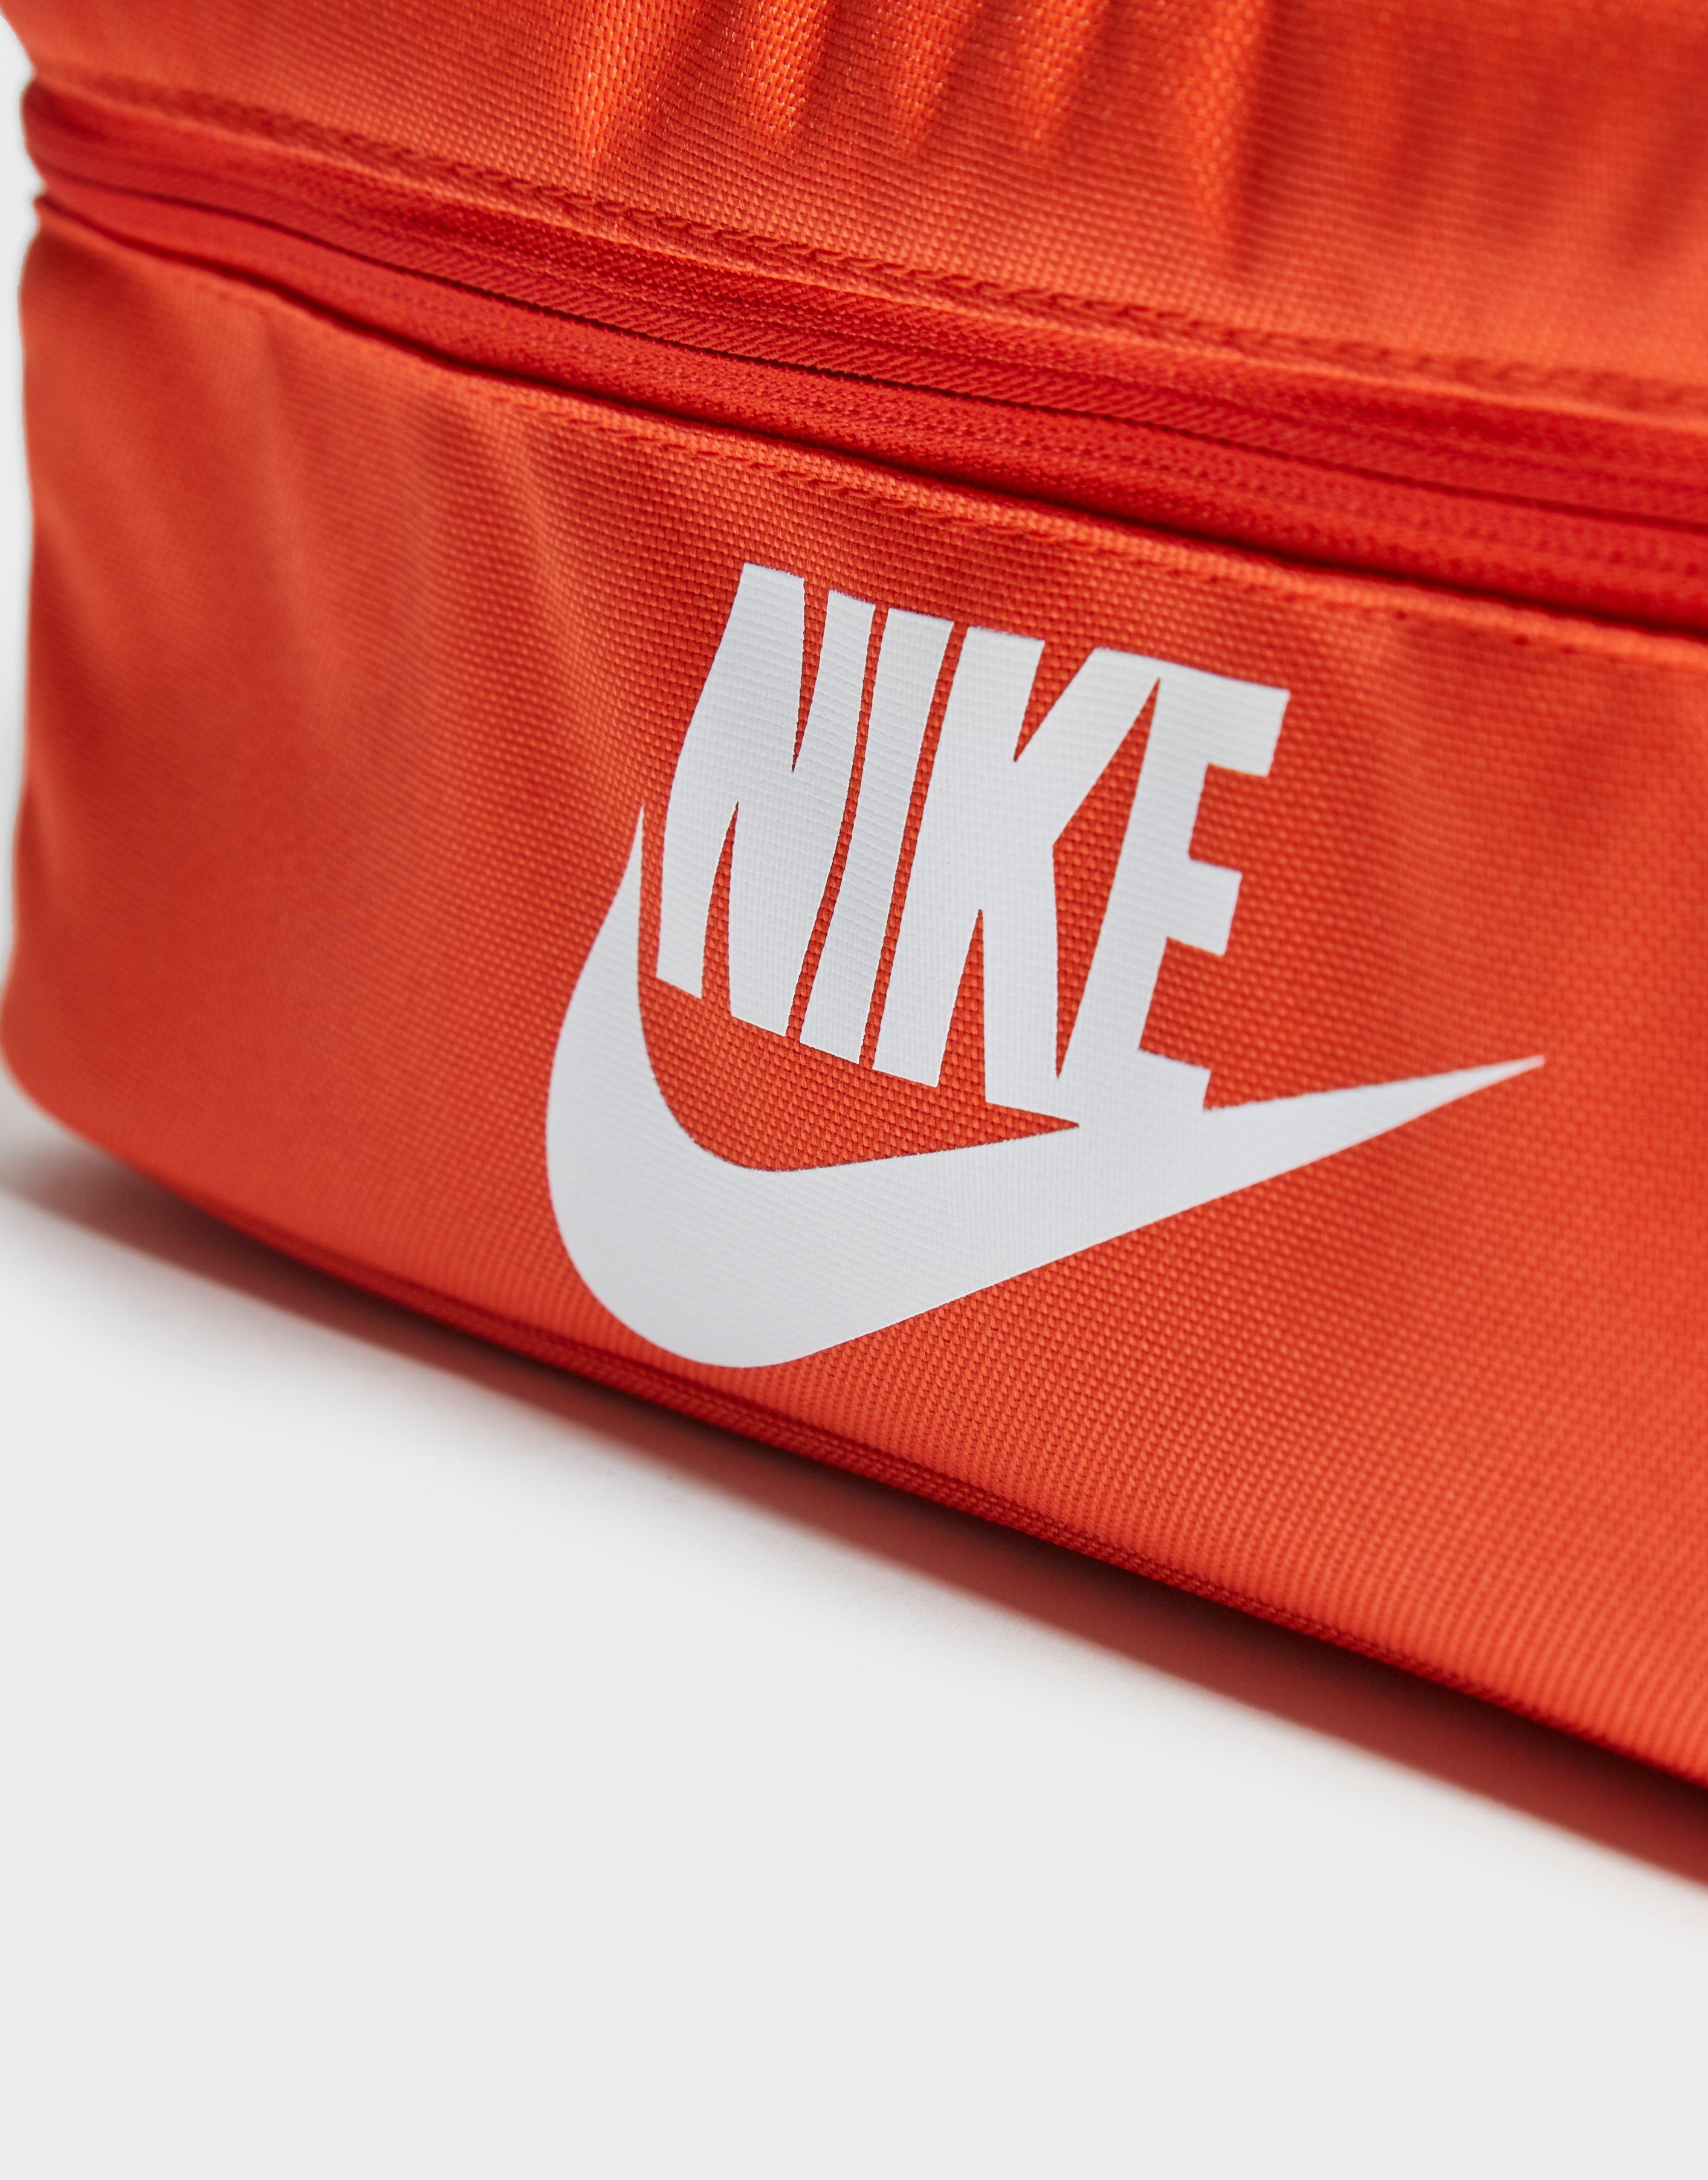 nike orange shoe box bag